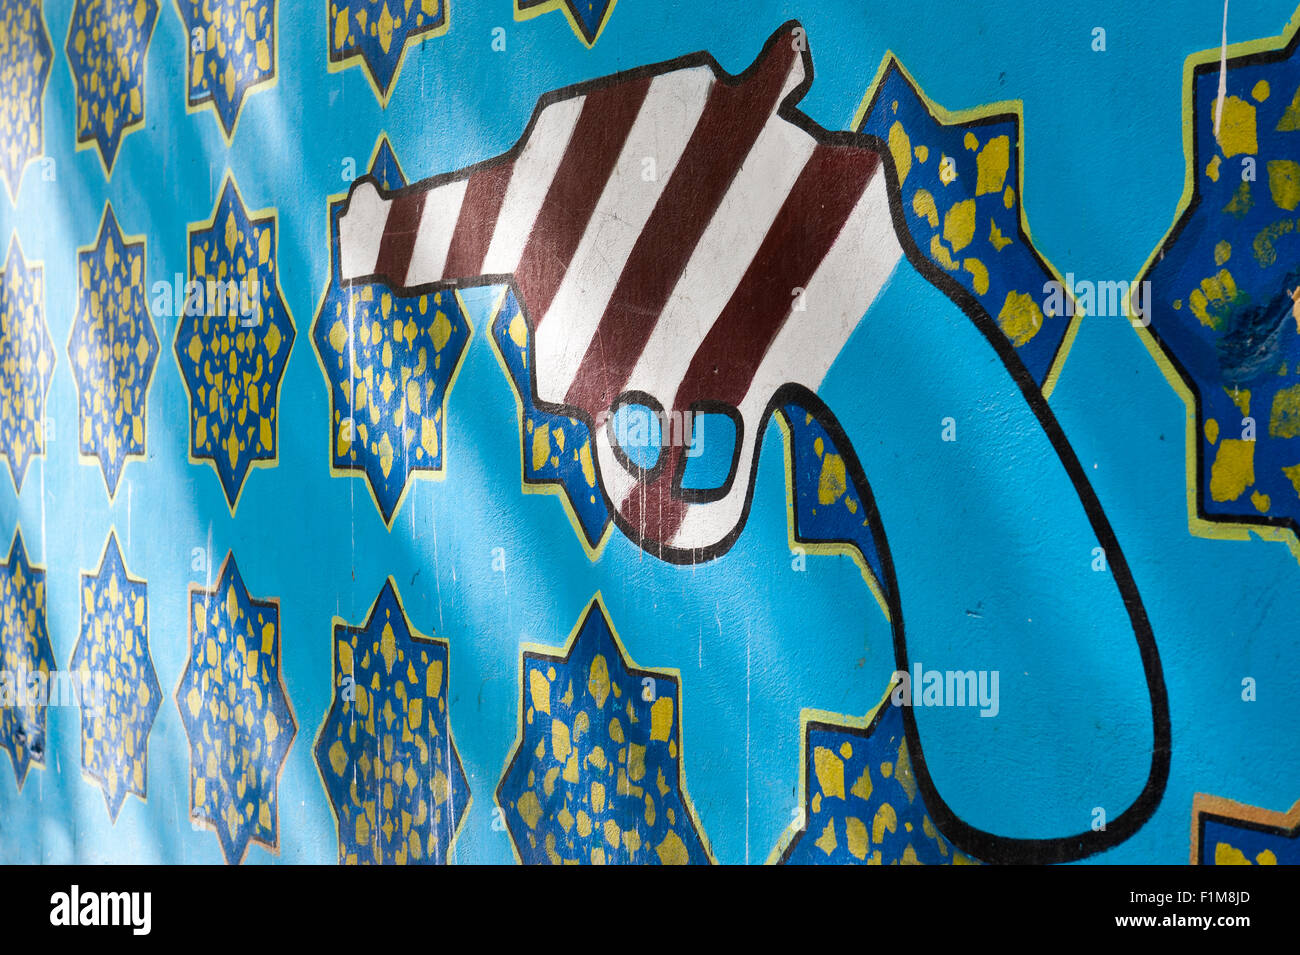 Graffiti sur un mur, symbole de l'Amérique, revolver et modèle iranien, ancienne ambassade des États-Unis d'Amérique à Téhéran Banque D'Images